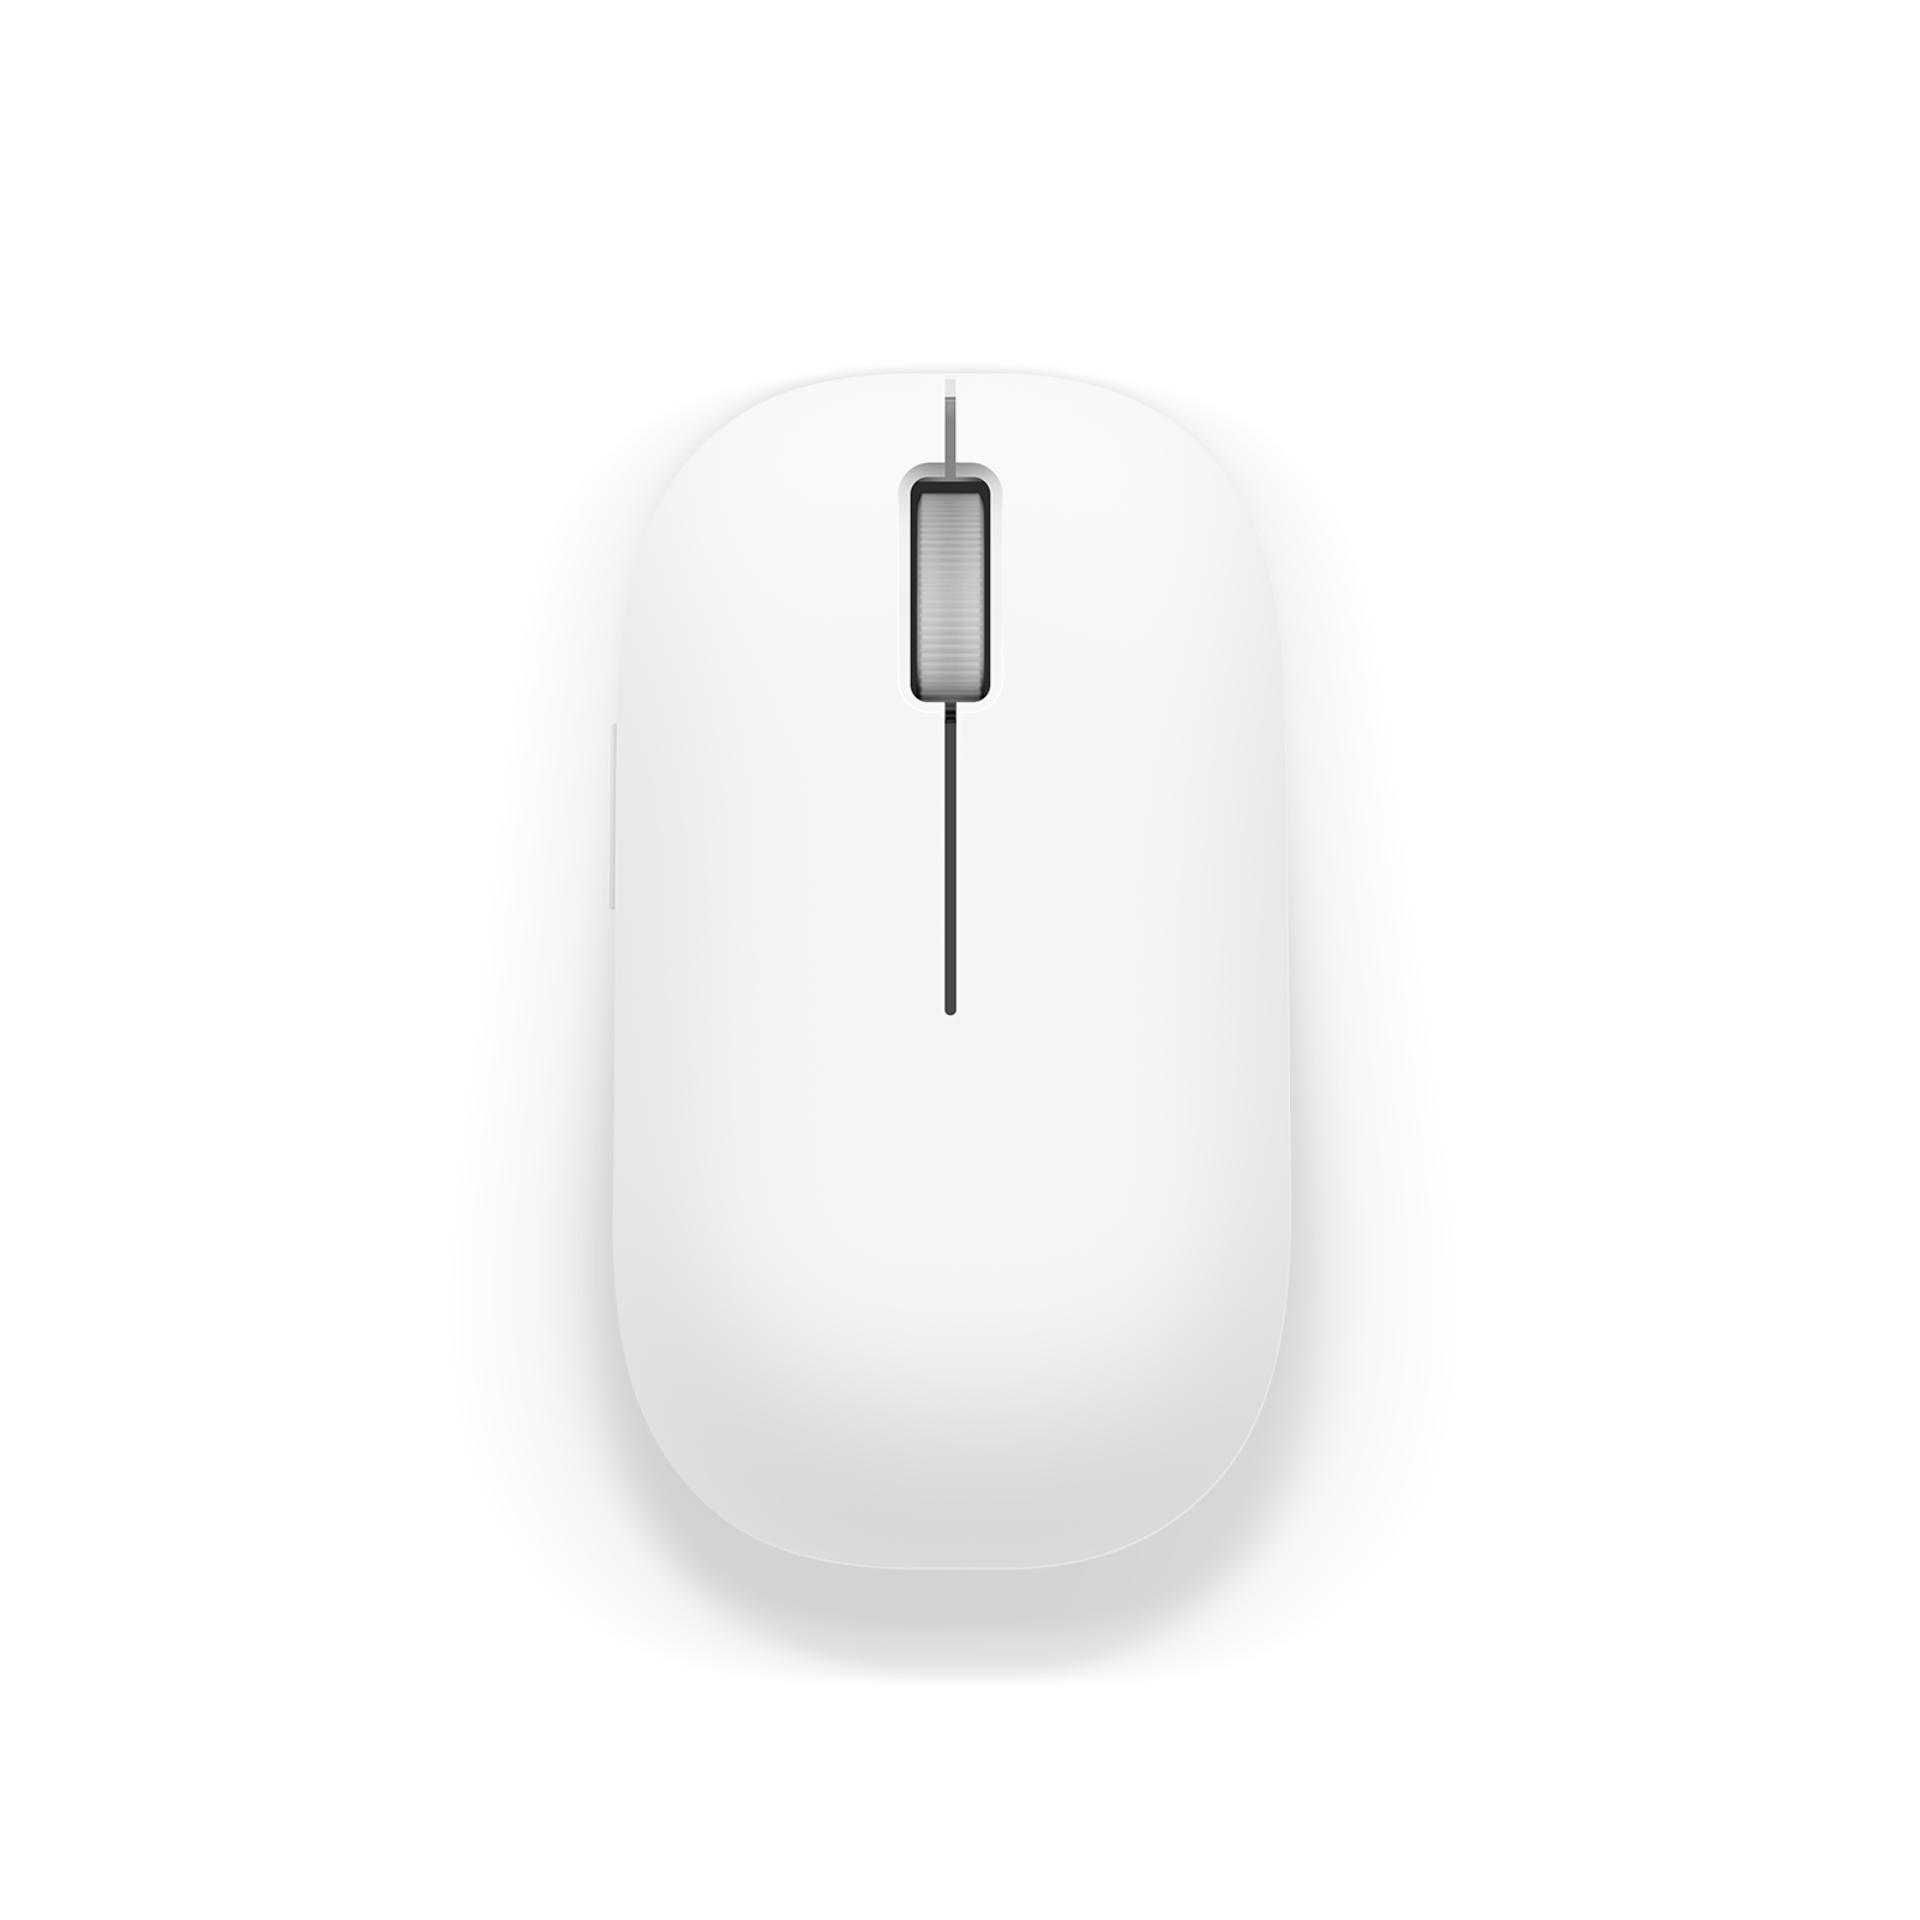 Chuột không dây Xiaomi Mi Wireless Mouse - Hãng phân phối chính thức